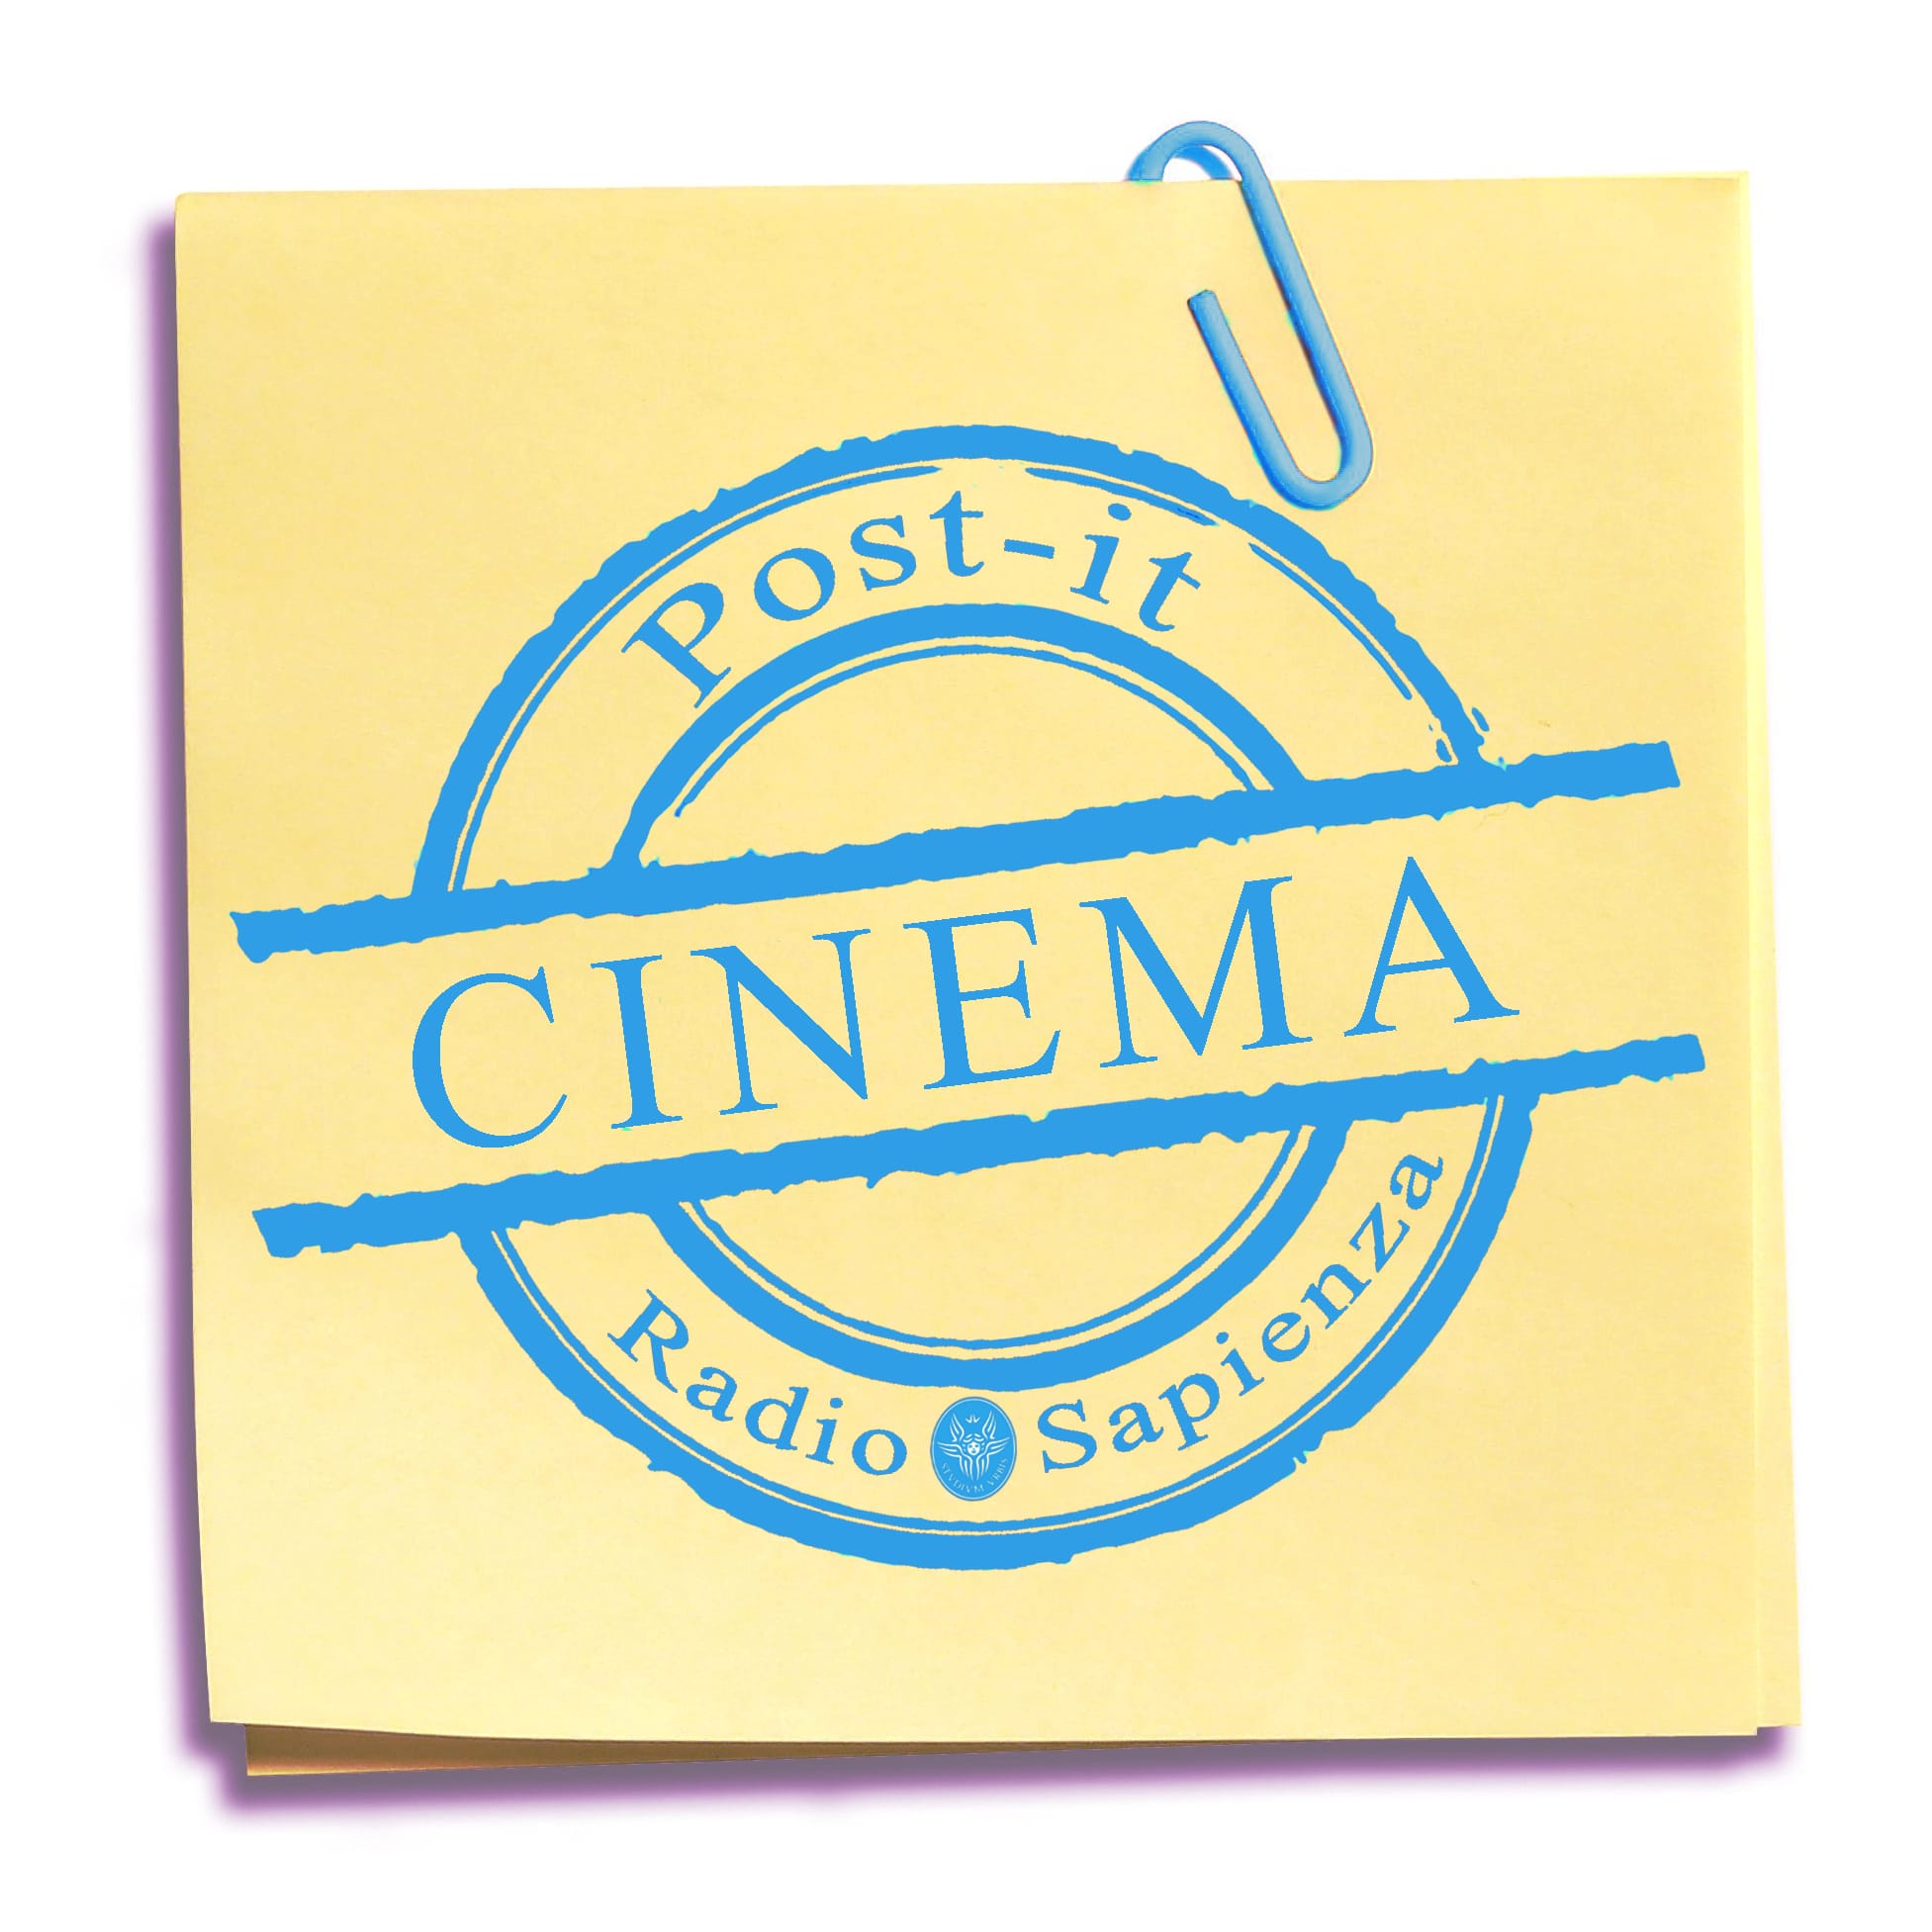 Post-it Cinema – Venerdì 19 Novembre